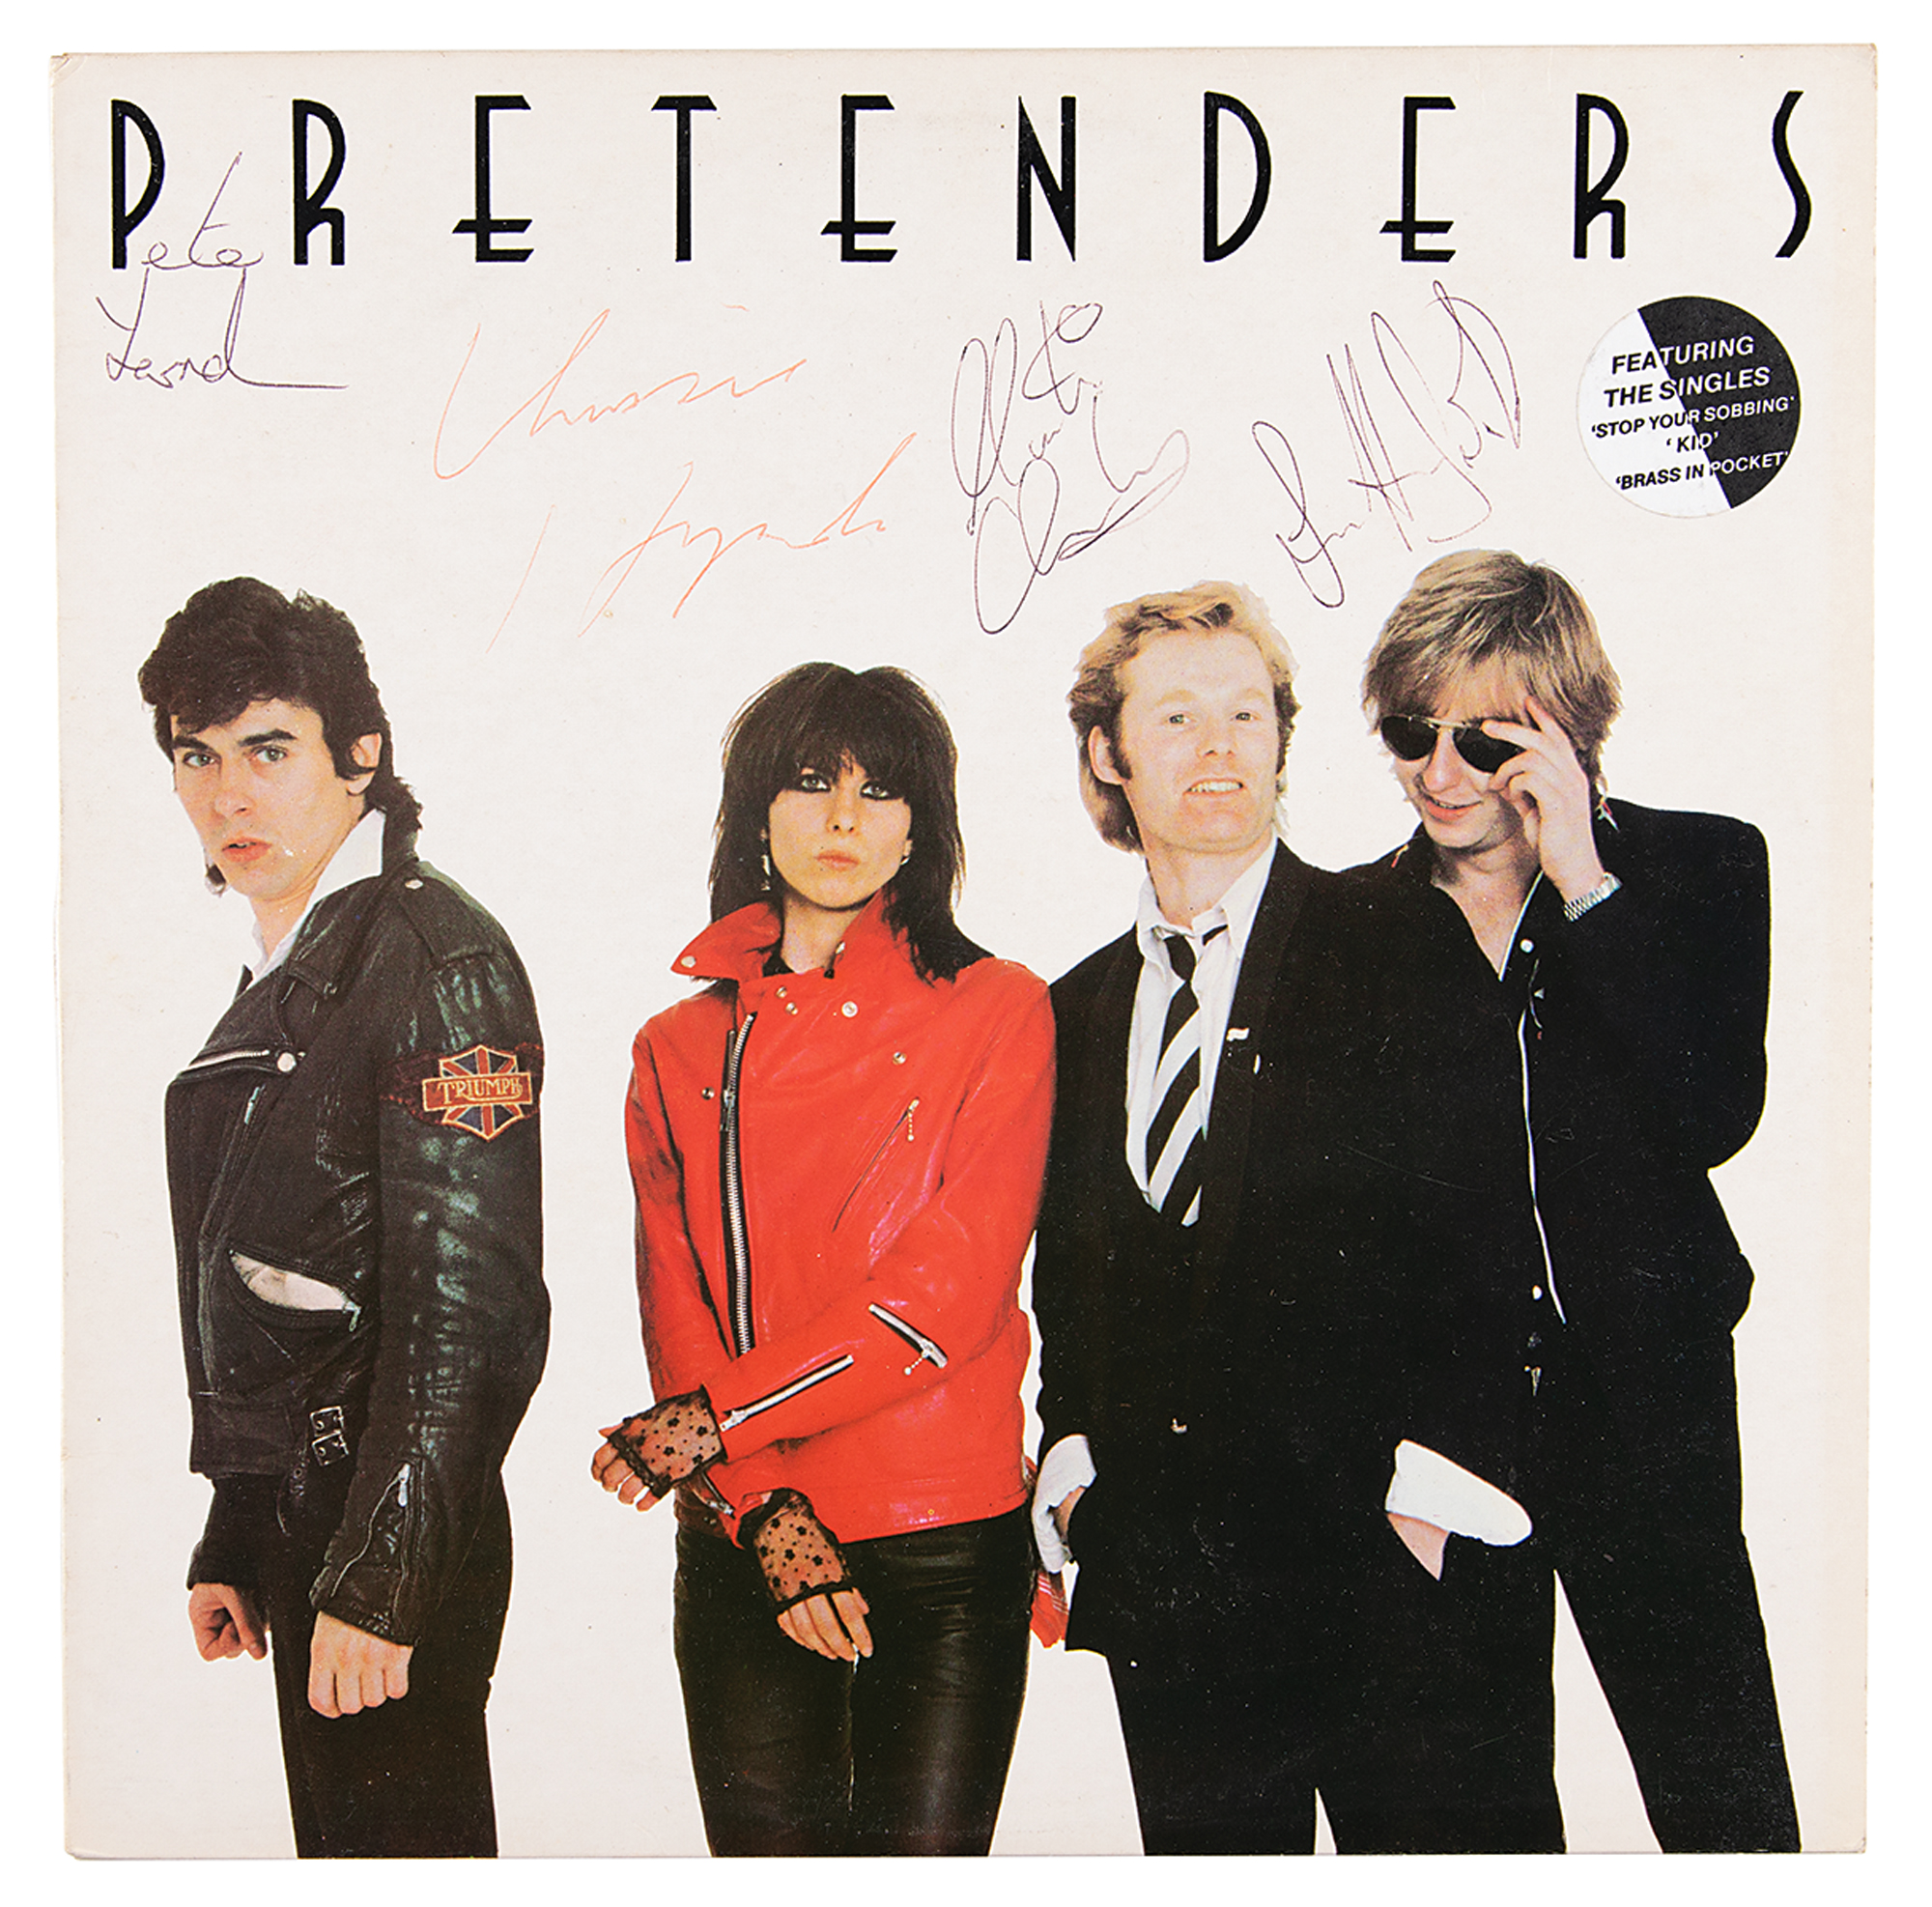 Lot #2324 The Pretenders Signed Album